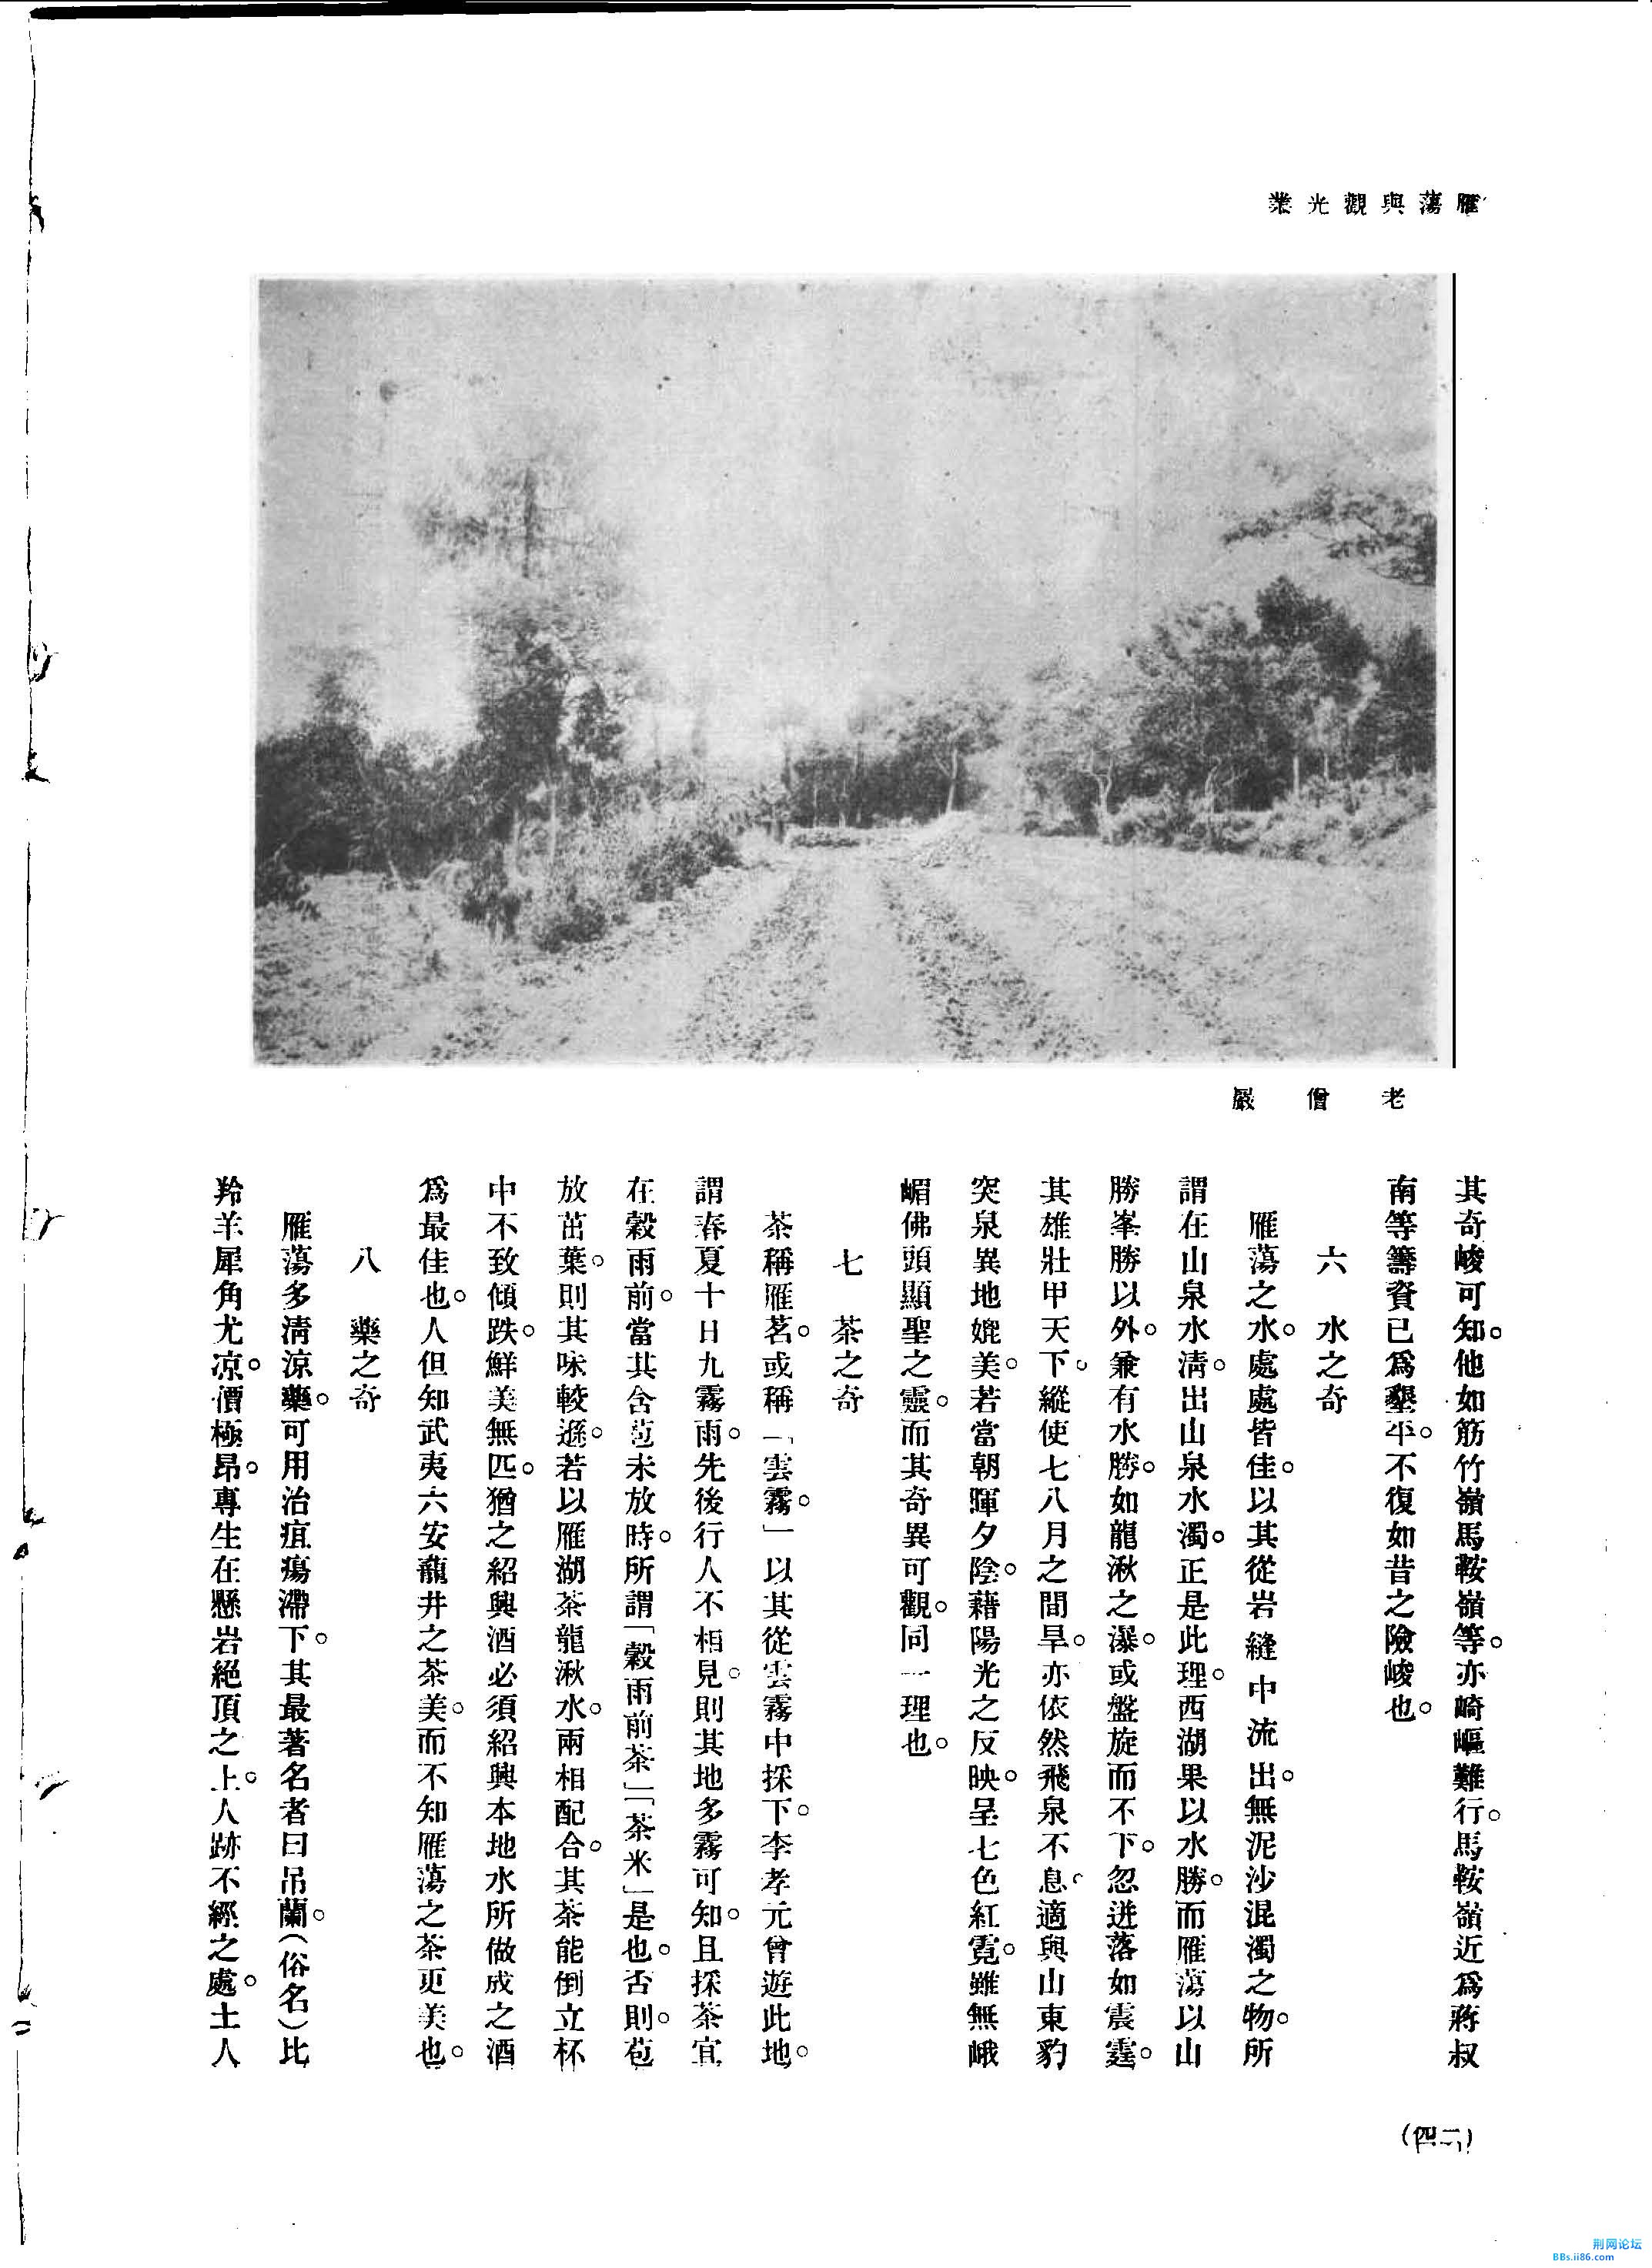 】陈经.雁荡与观光业[J].旅行杂志,1932,(第9号)._页面_4.jpg